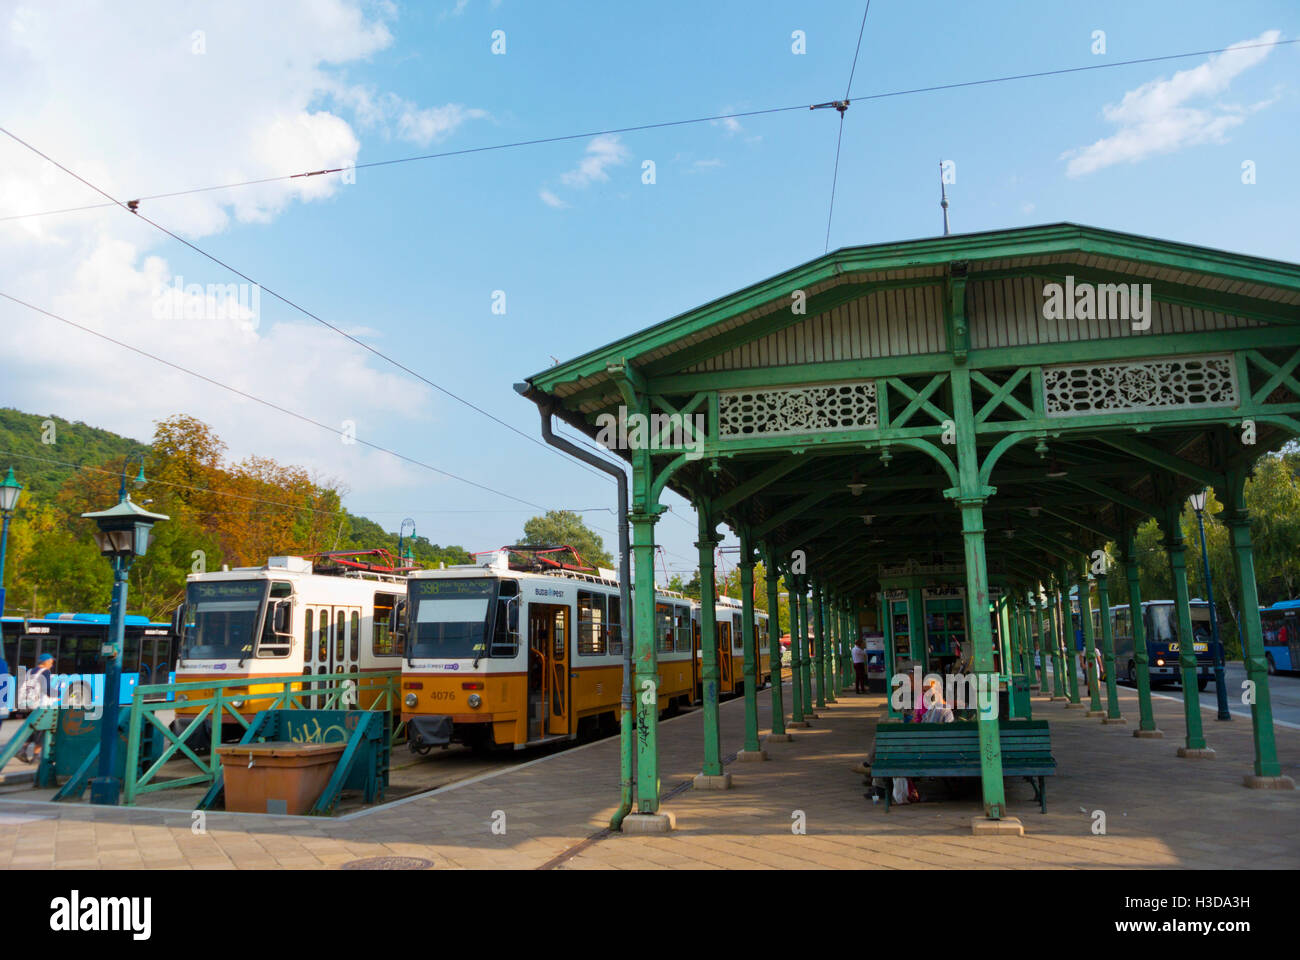 Bus and tram hub, Huvosvolgy, Buda, Budapest, Hungary Stock Photo